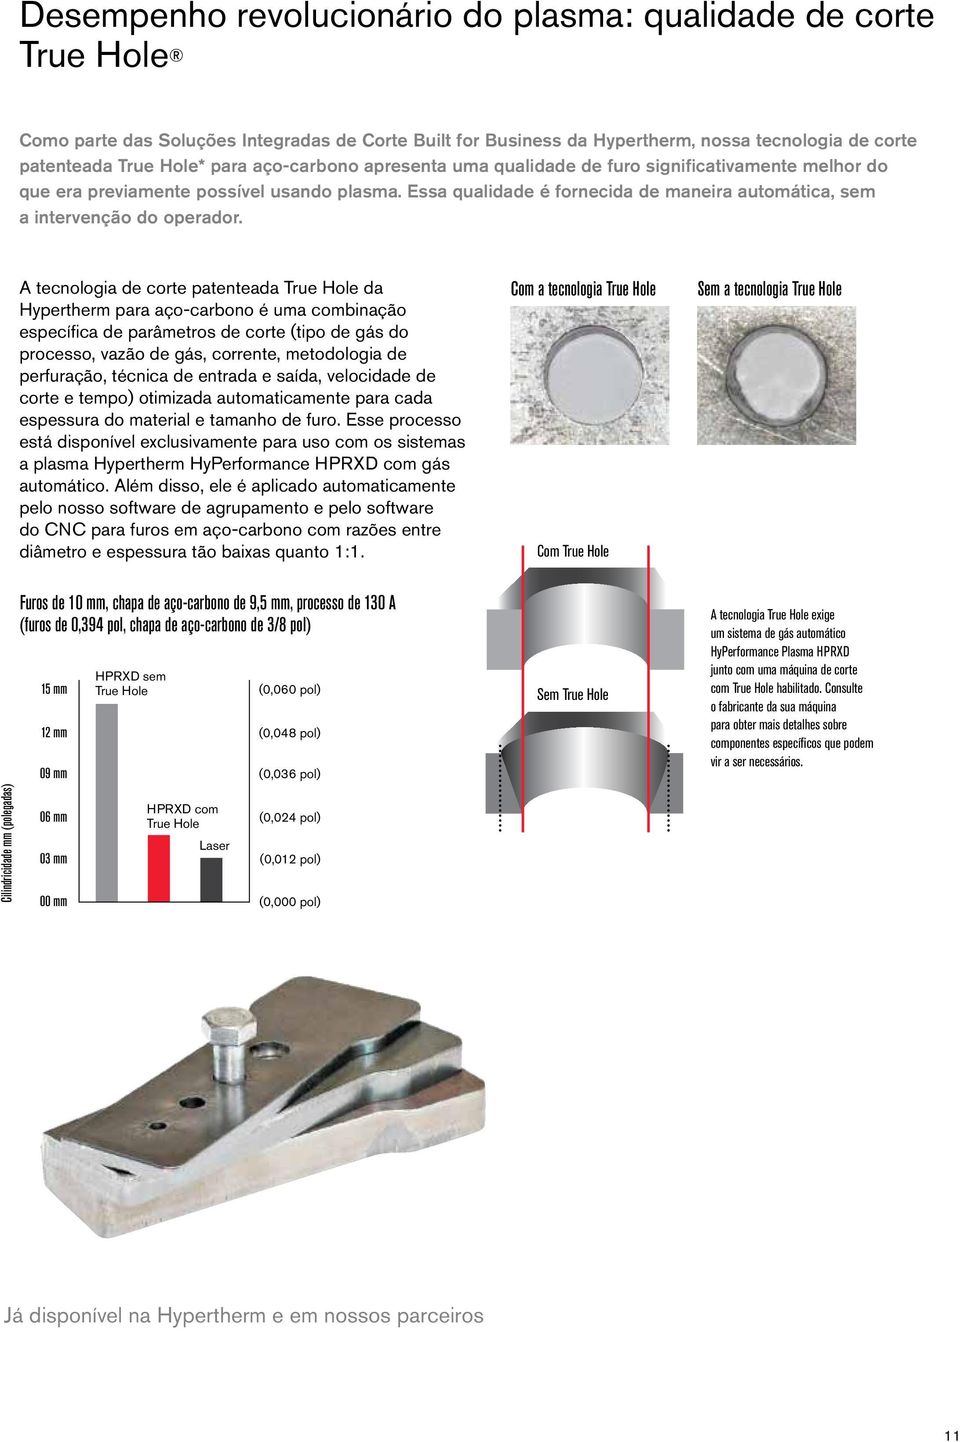 A tecnologia de corte patenteada True Hole da Hypertherm para aço-carbono é uma combinação específica de parâmetros de corte (tipo de gás do processo, vazão de gás, corrente, metodologia de